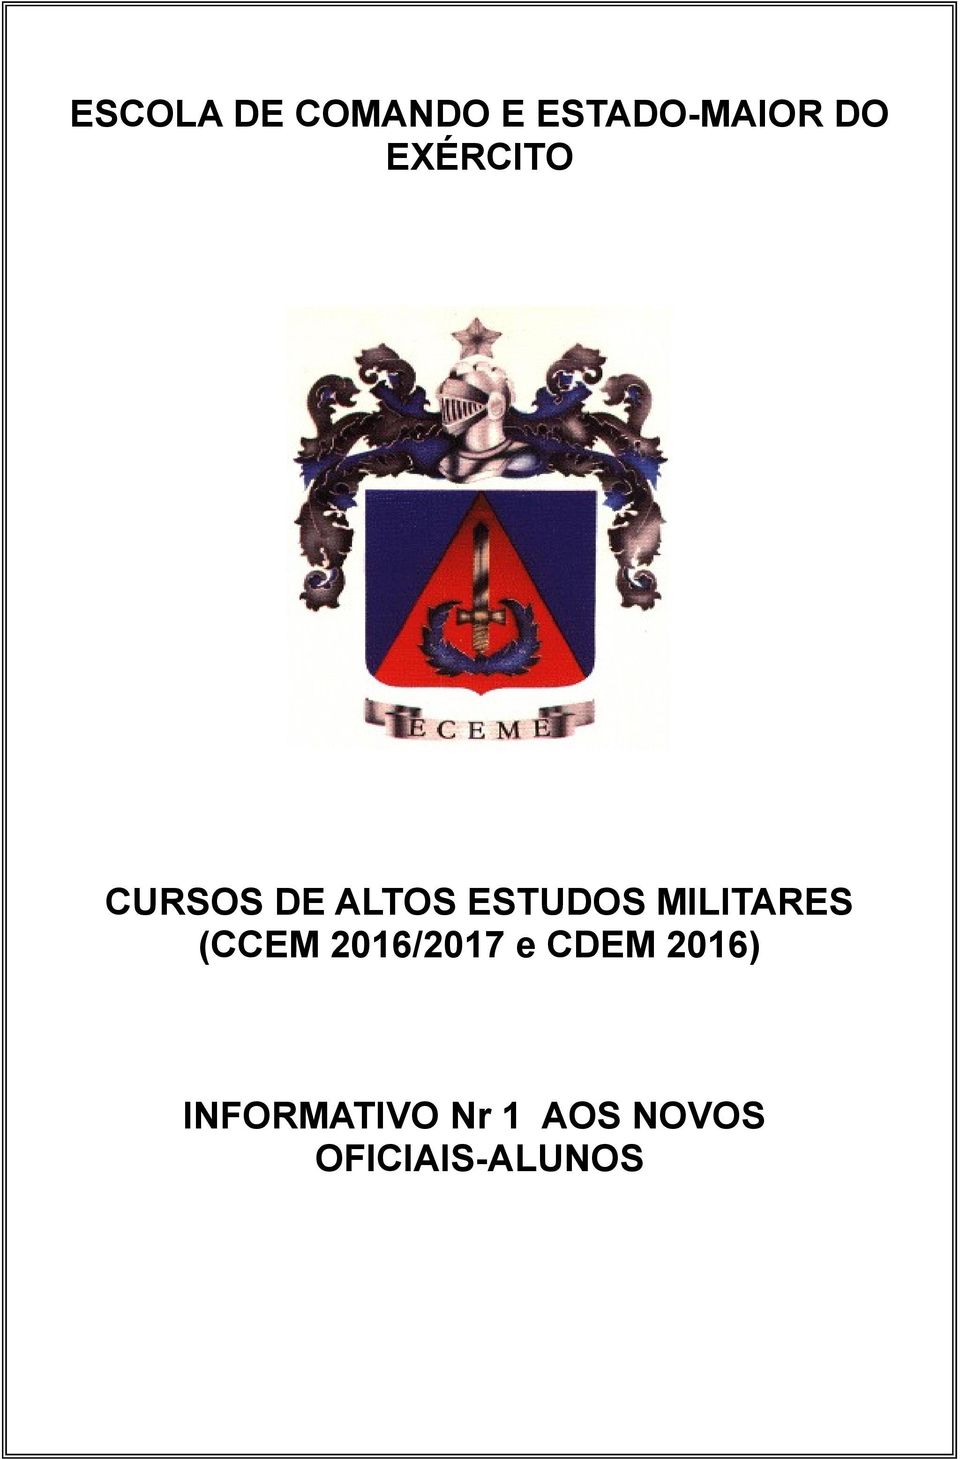 MILITARES (CCEM 2016/2017 e CDEM